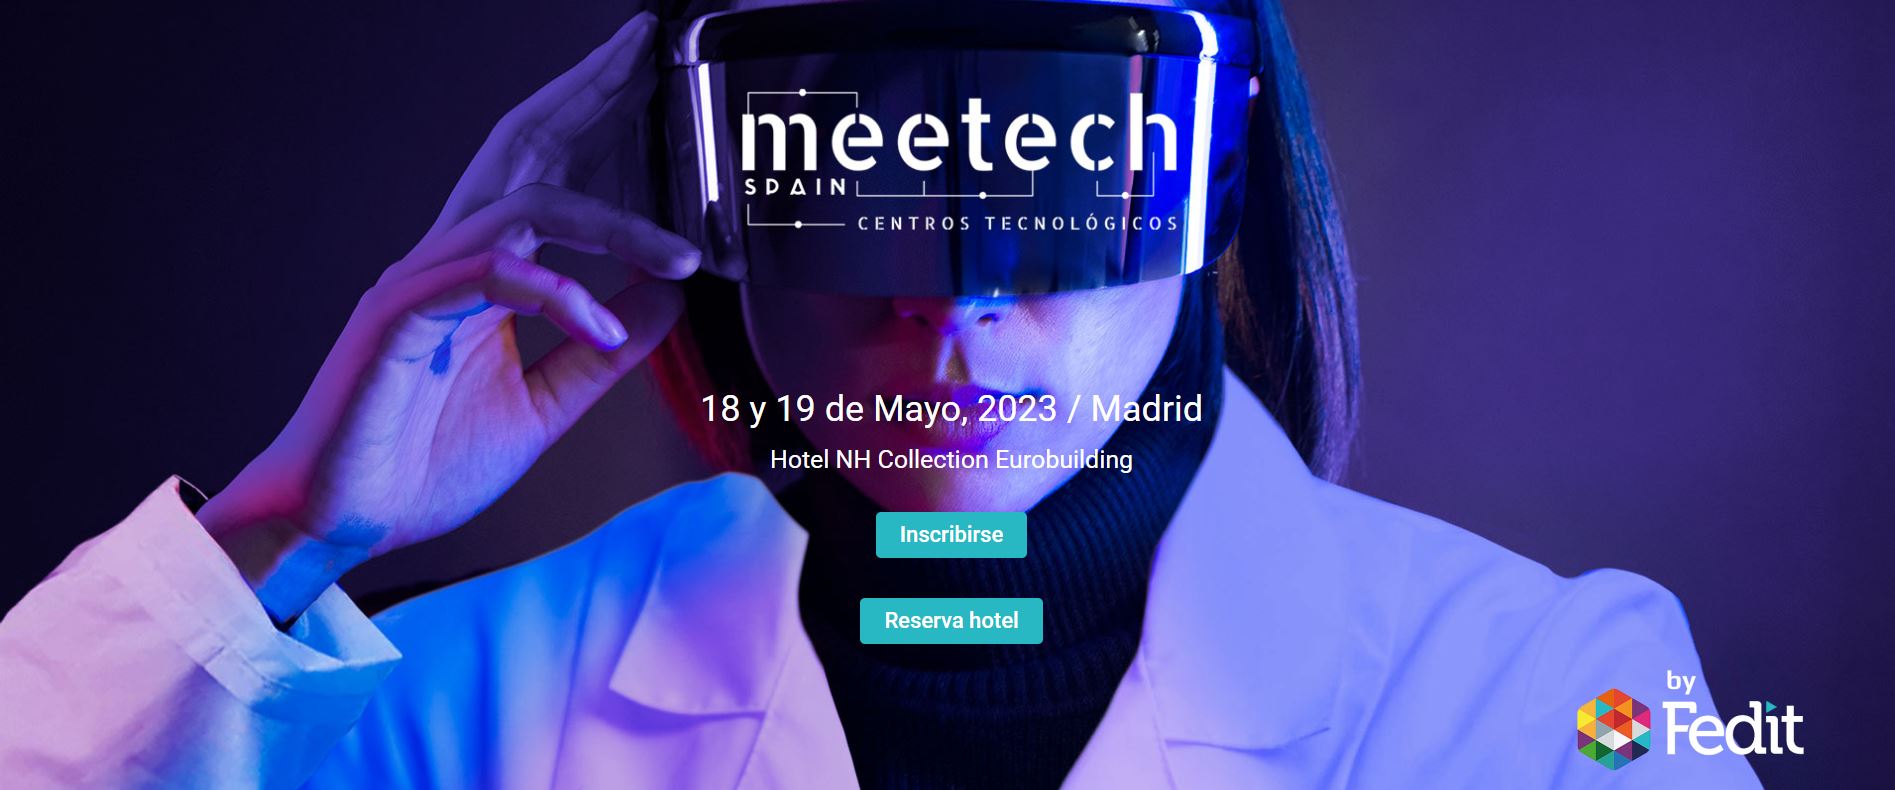 Manufacturing-ari aplikatutako IA-ren arrakasta-kasuak, IDEKOk Meetech Spain-entzat egindako proposamena